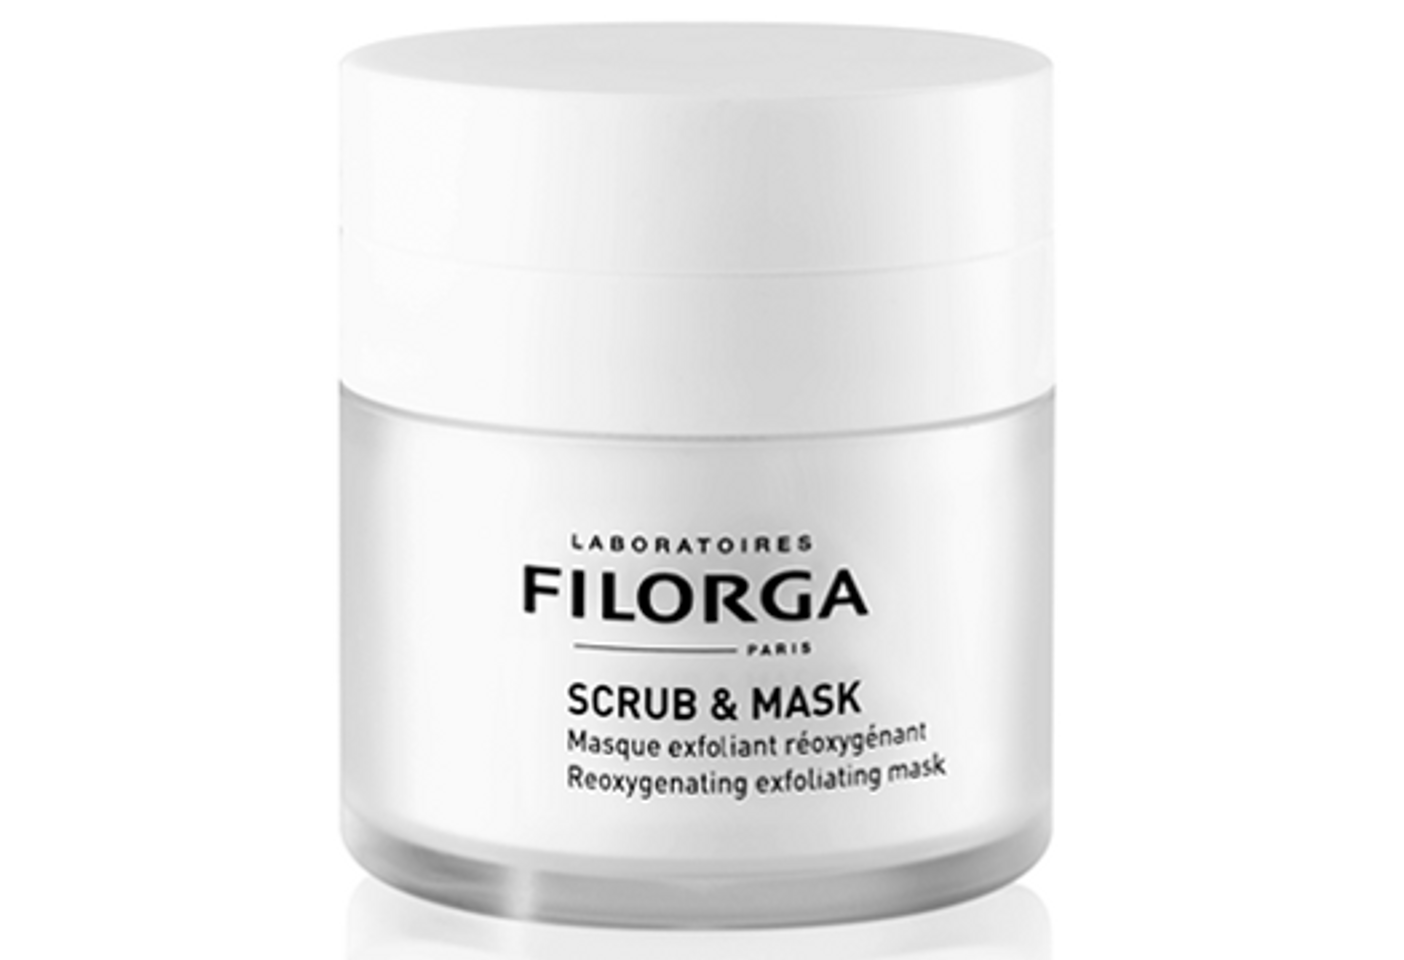 Mặt nạ tẩy da chết Filorga Scrub And Mask với cơ chế hoạt động tạo bọt oxygen thải độc sâu